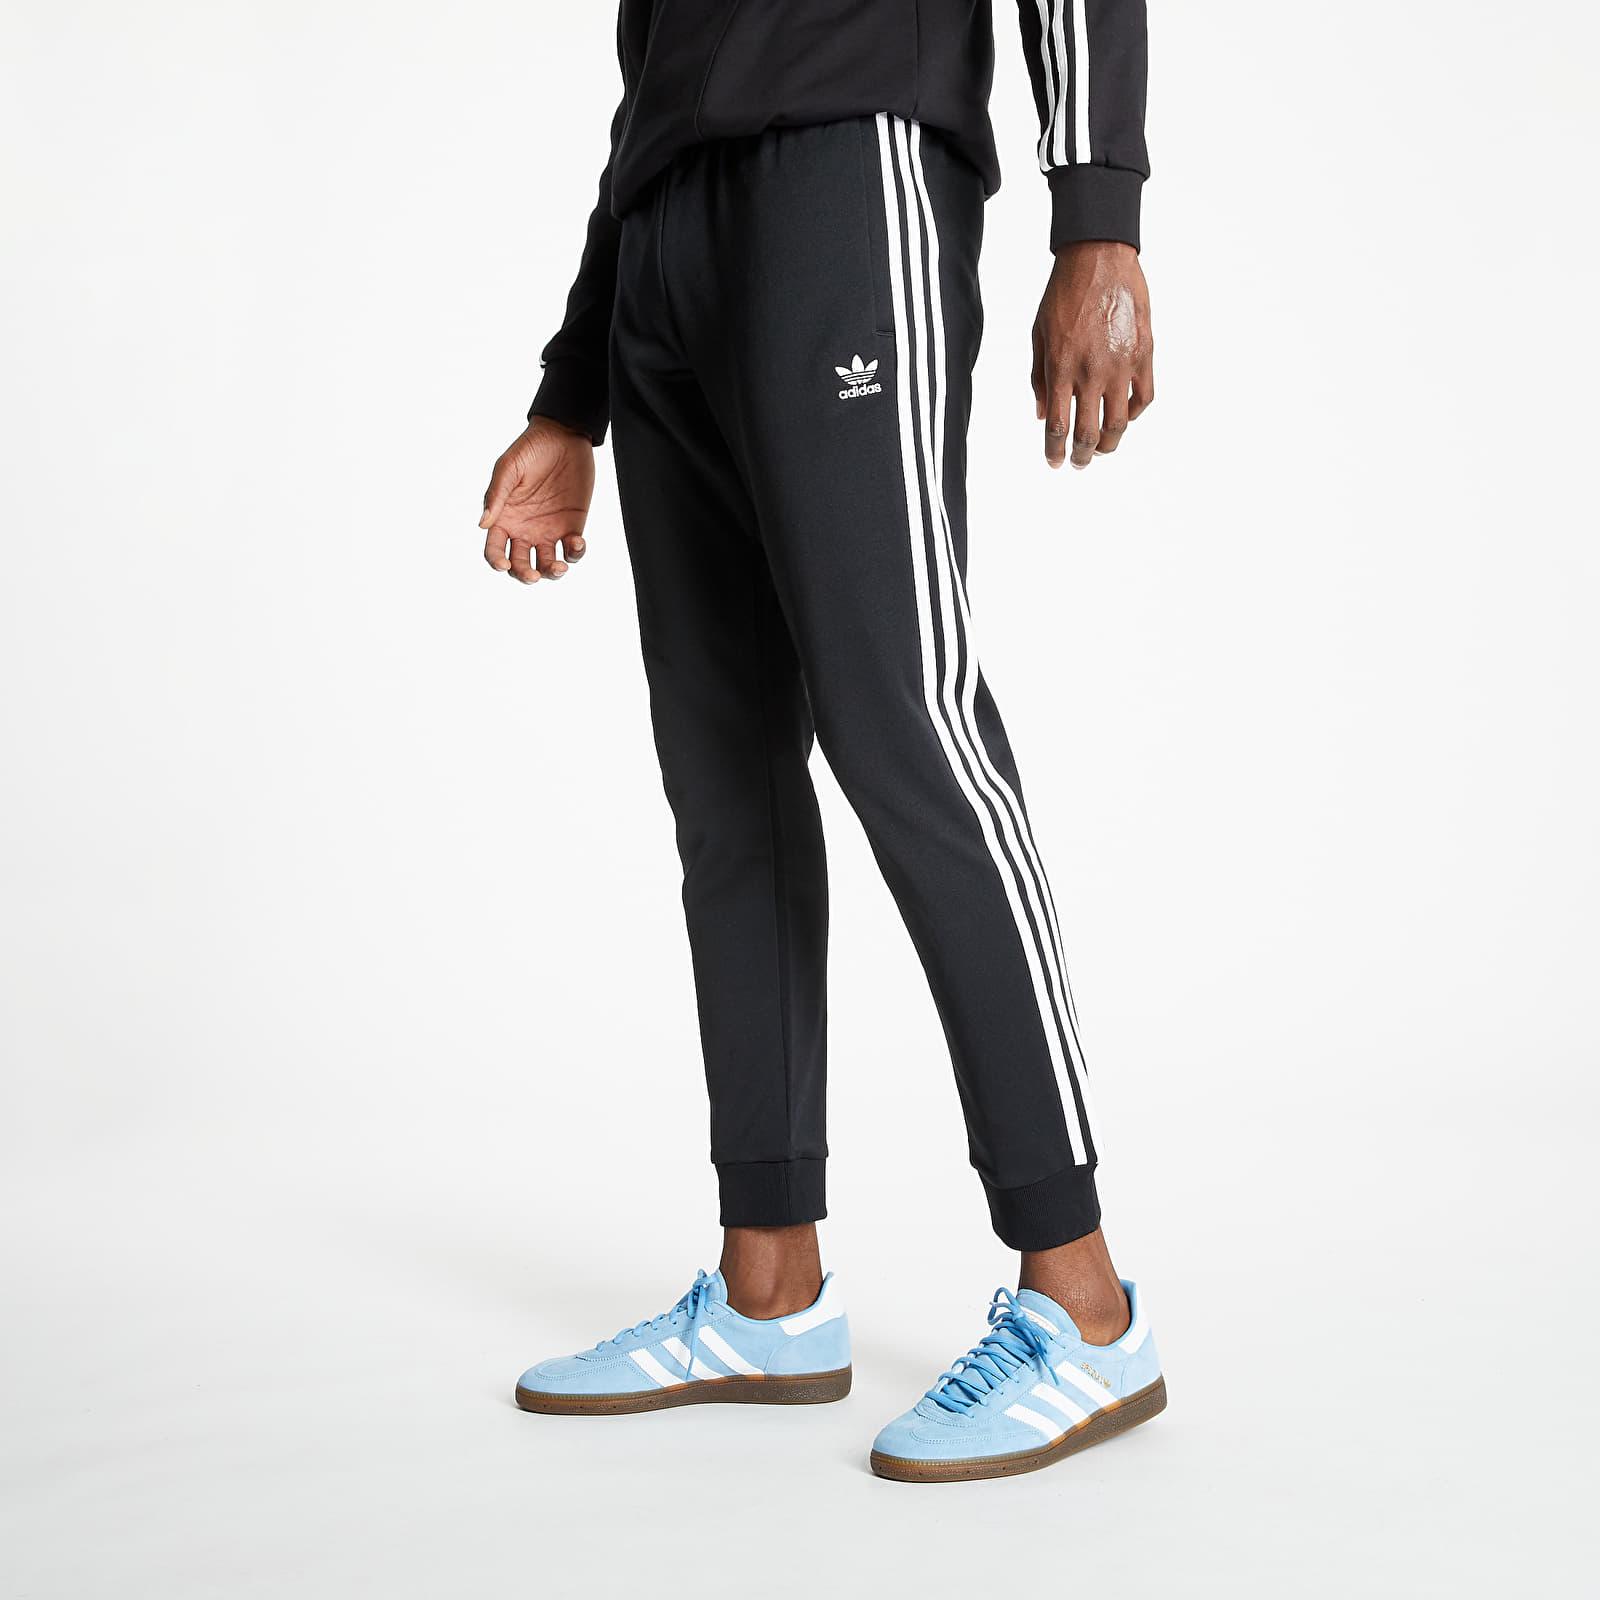 adidas Originals Adidas Superstar Trackpants Prime Blue Black/ White ...